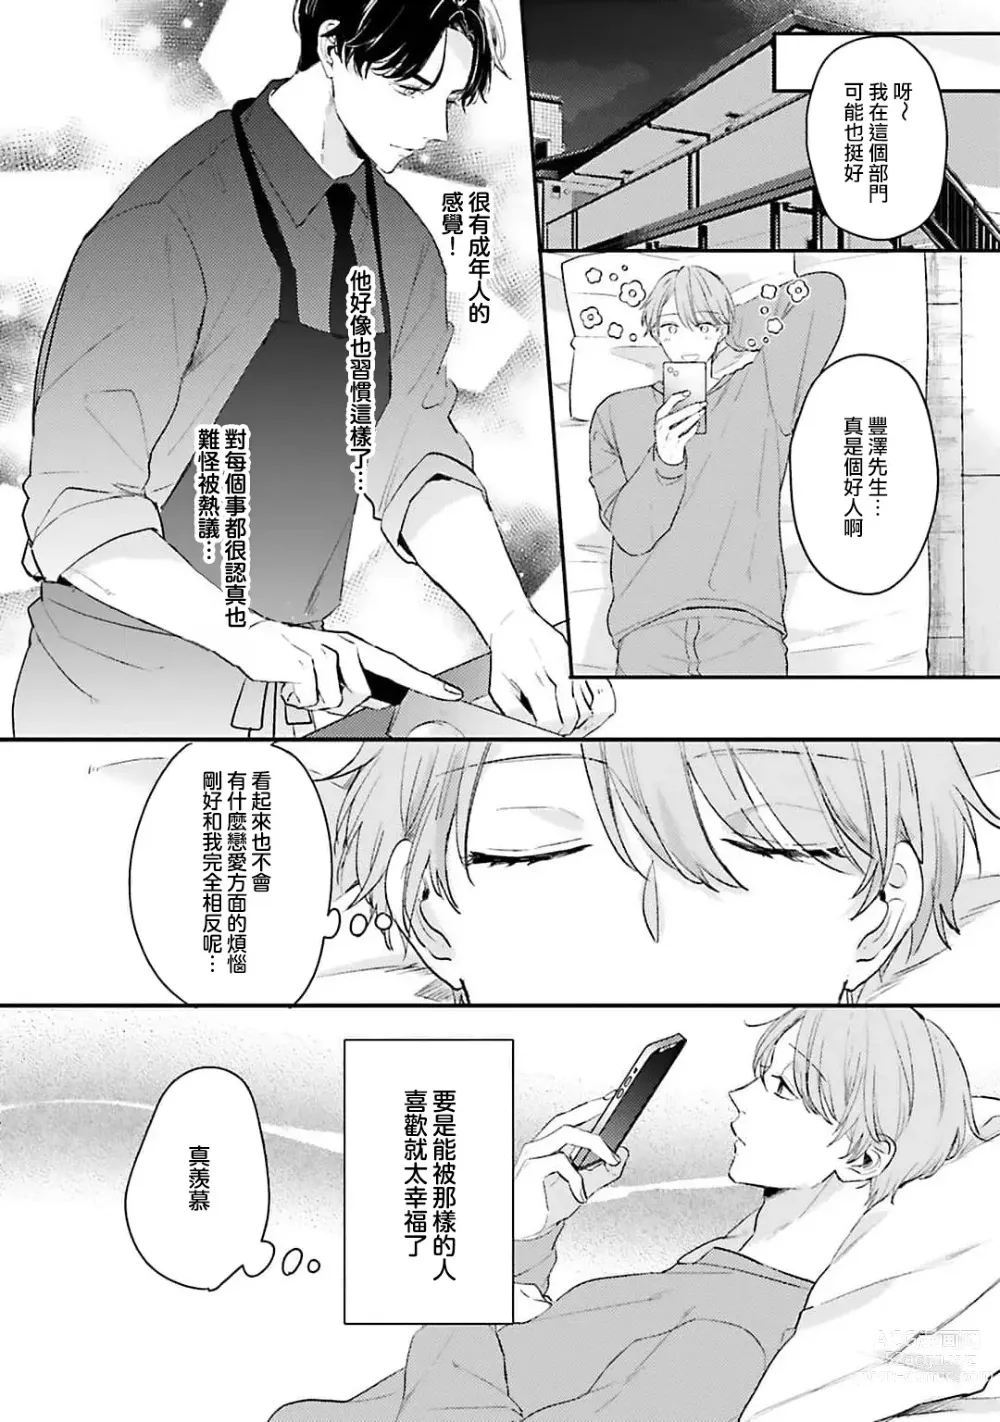 Page 15 of manga 绽放的恋爱皆为醉与甜1-5